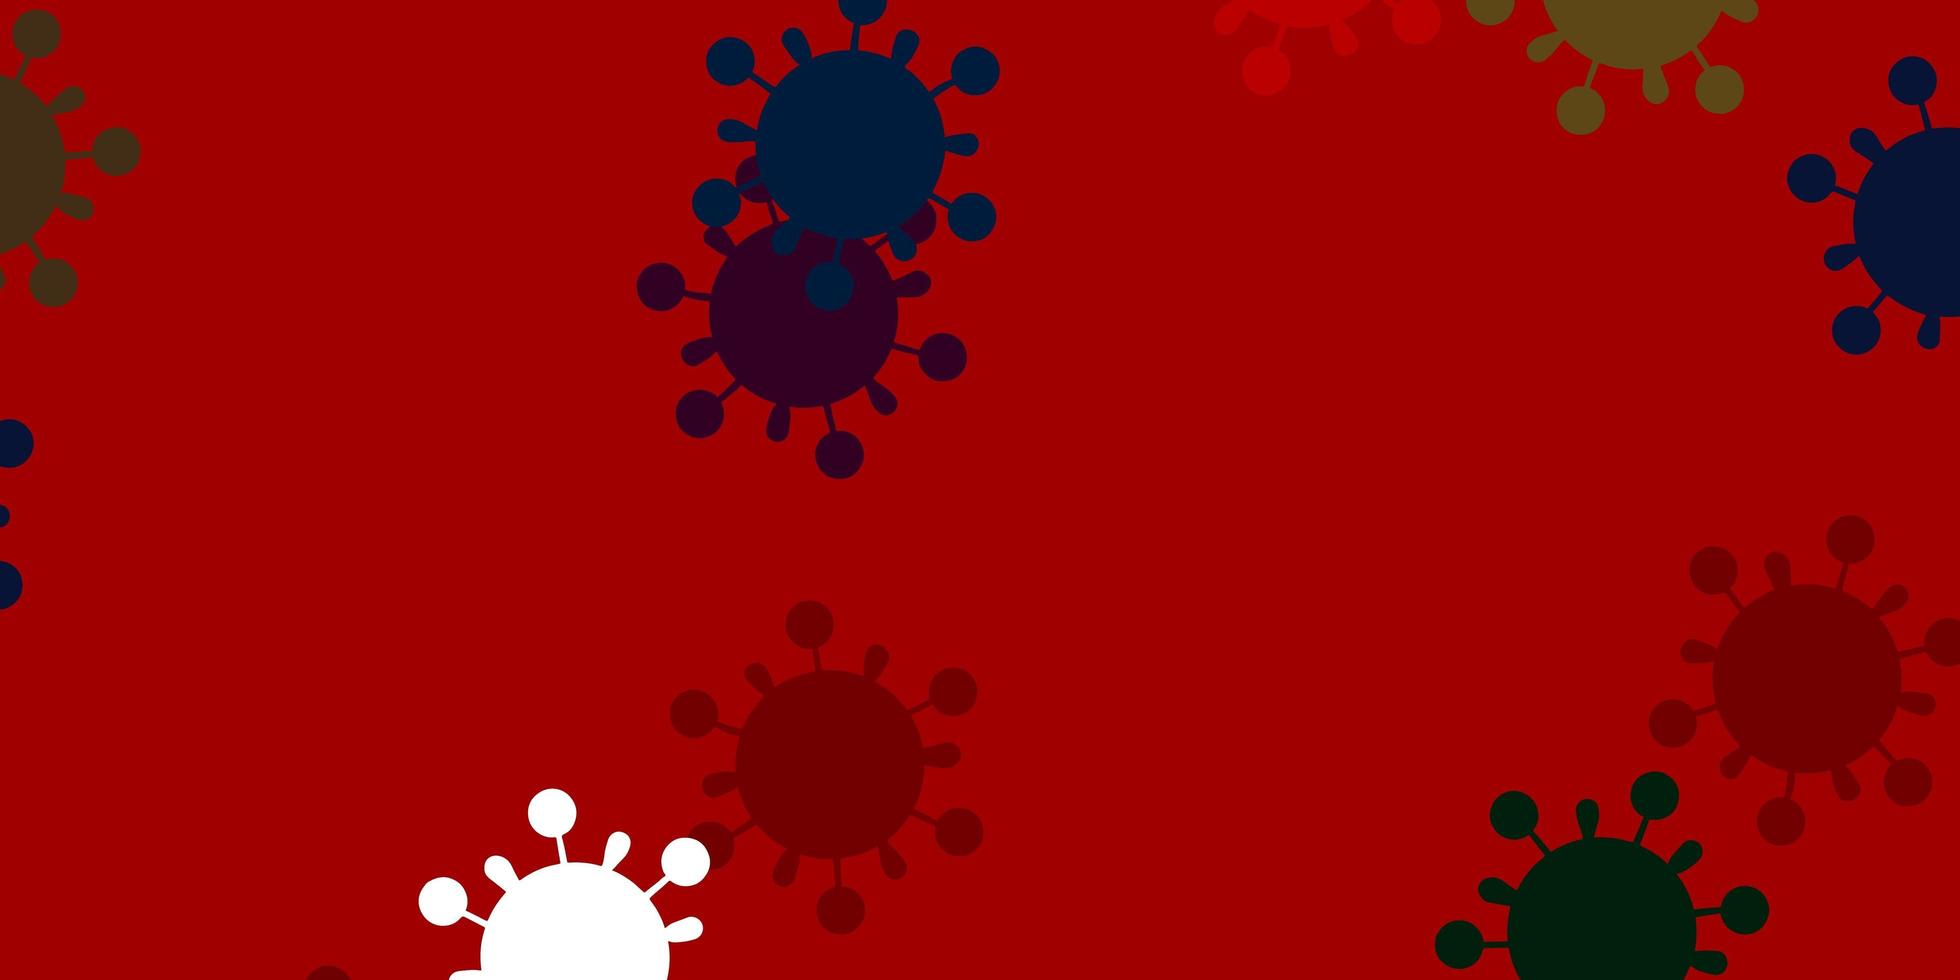 ljusgrön, röd vektor bakgrund med virussymboler.